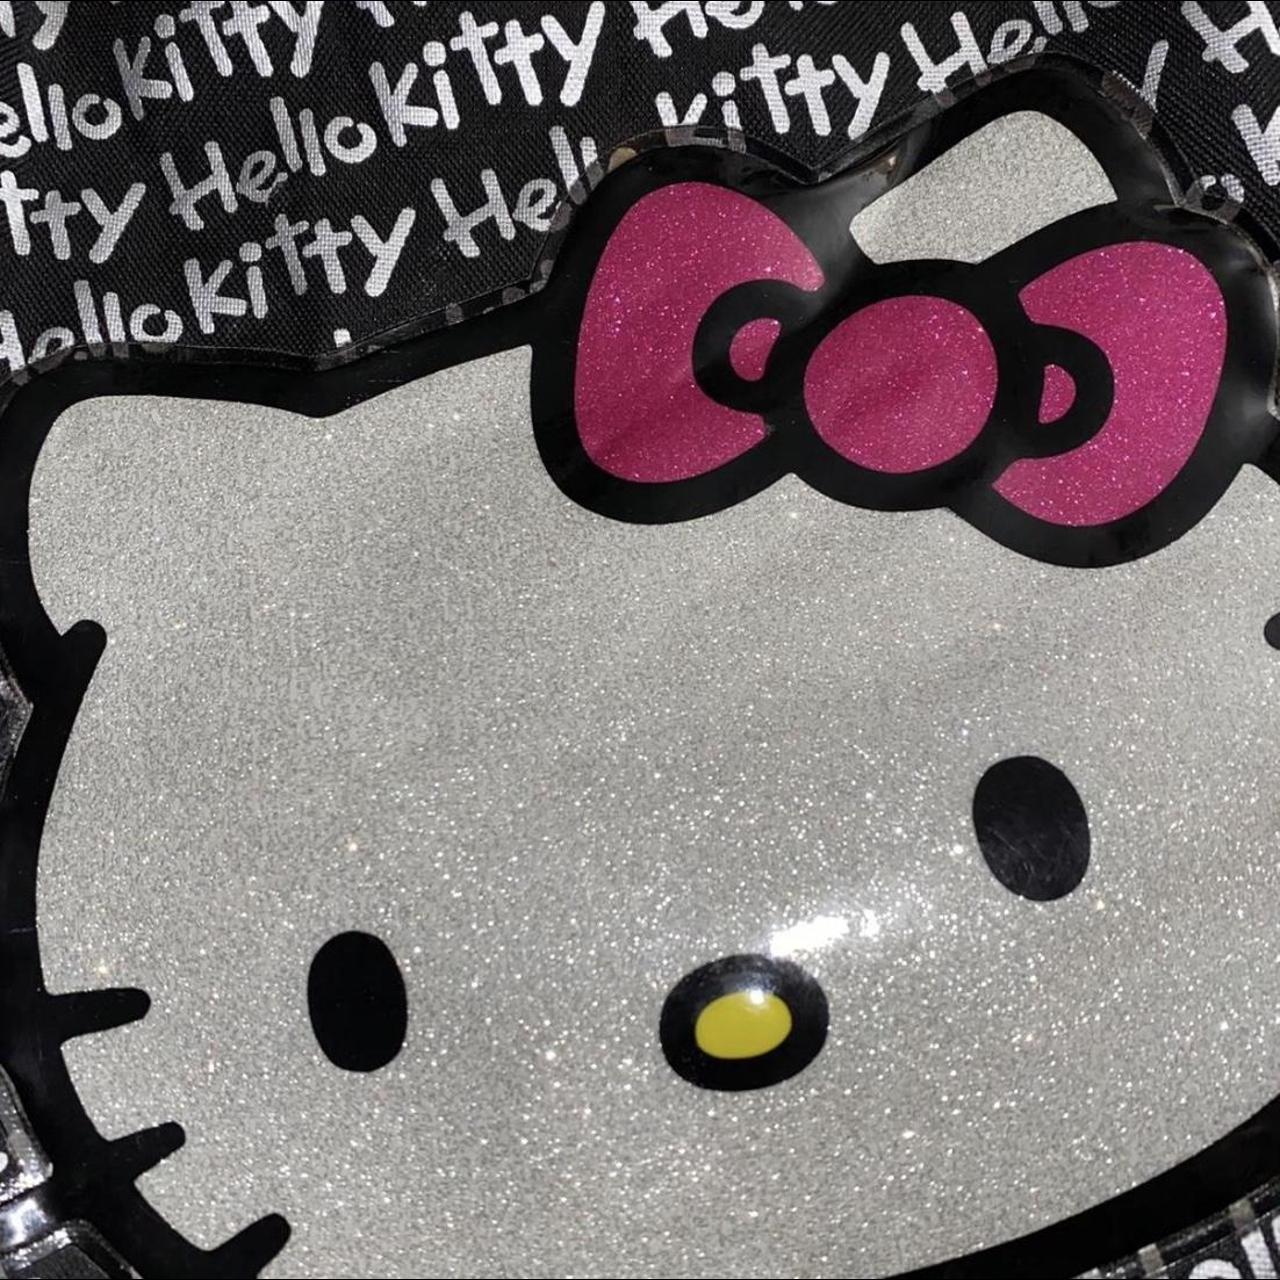 Hello Kitty messenger bag 💘 Super duper adorable - Depop